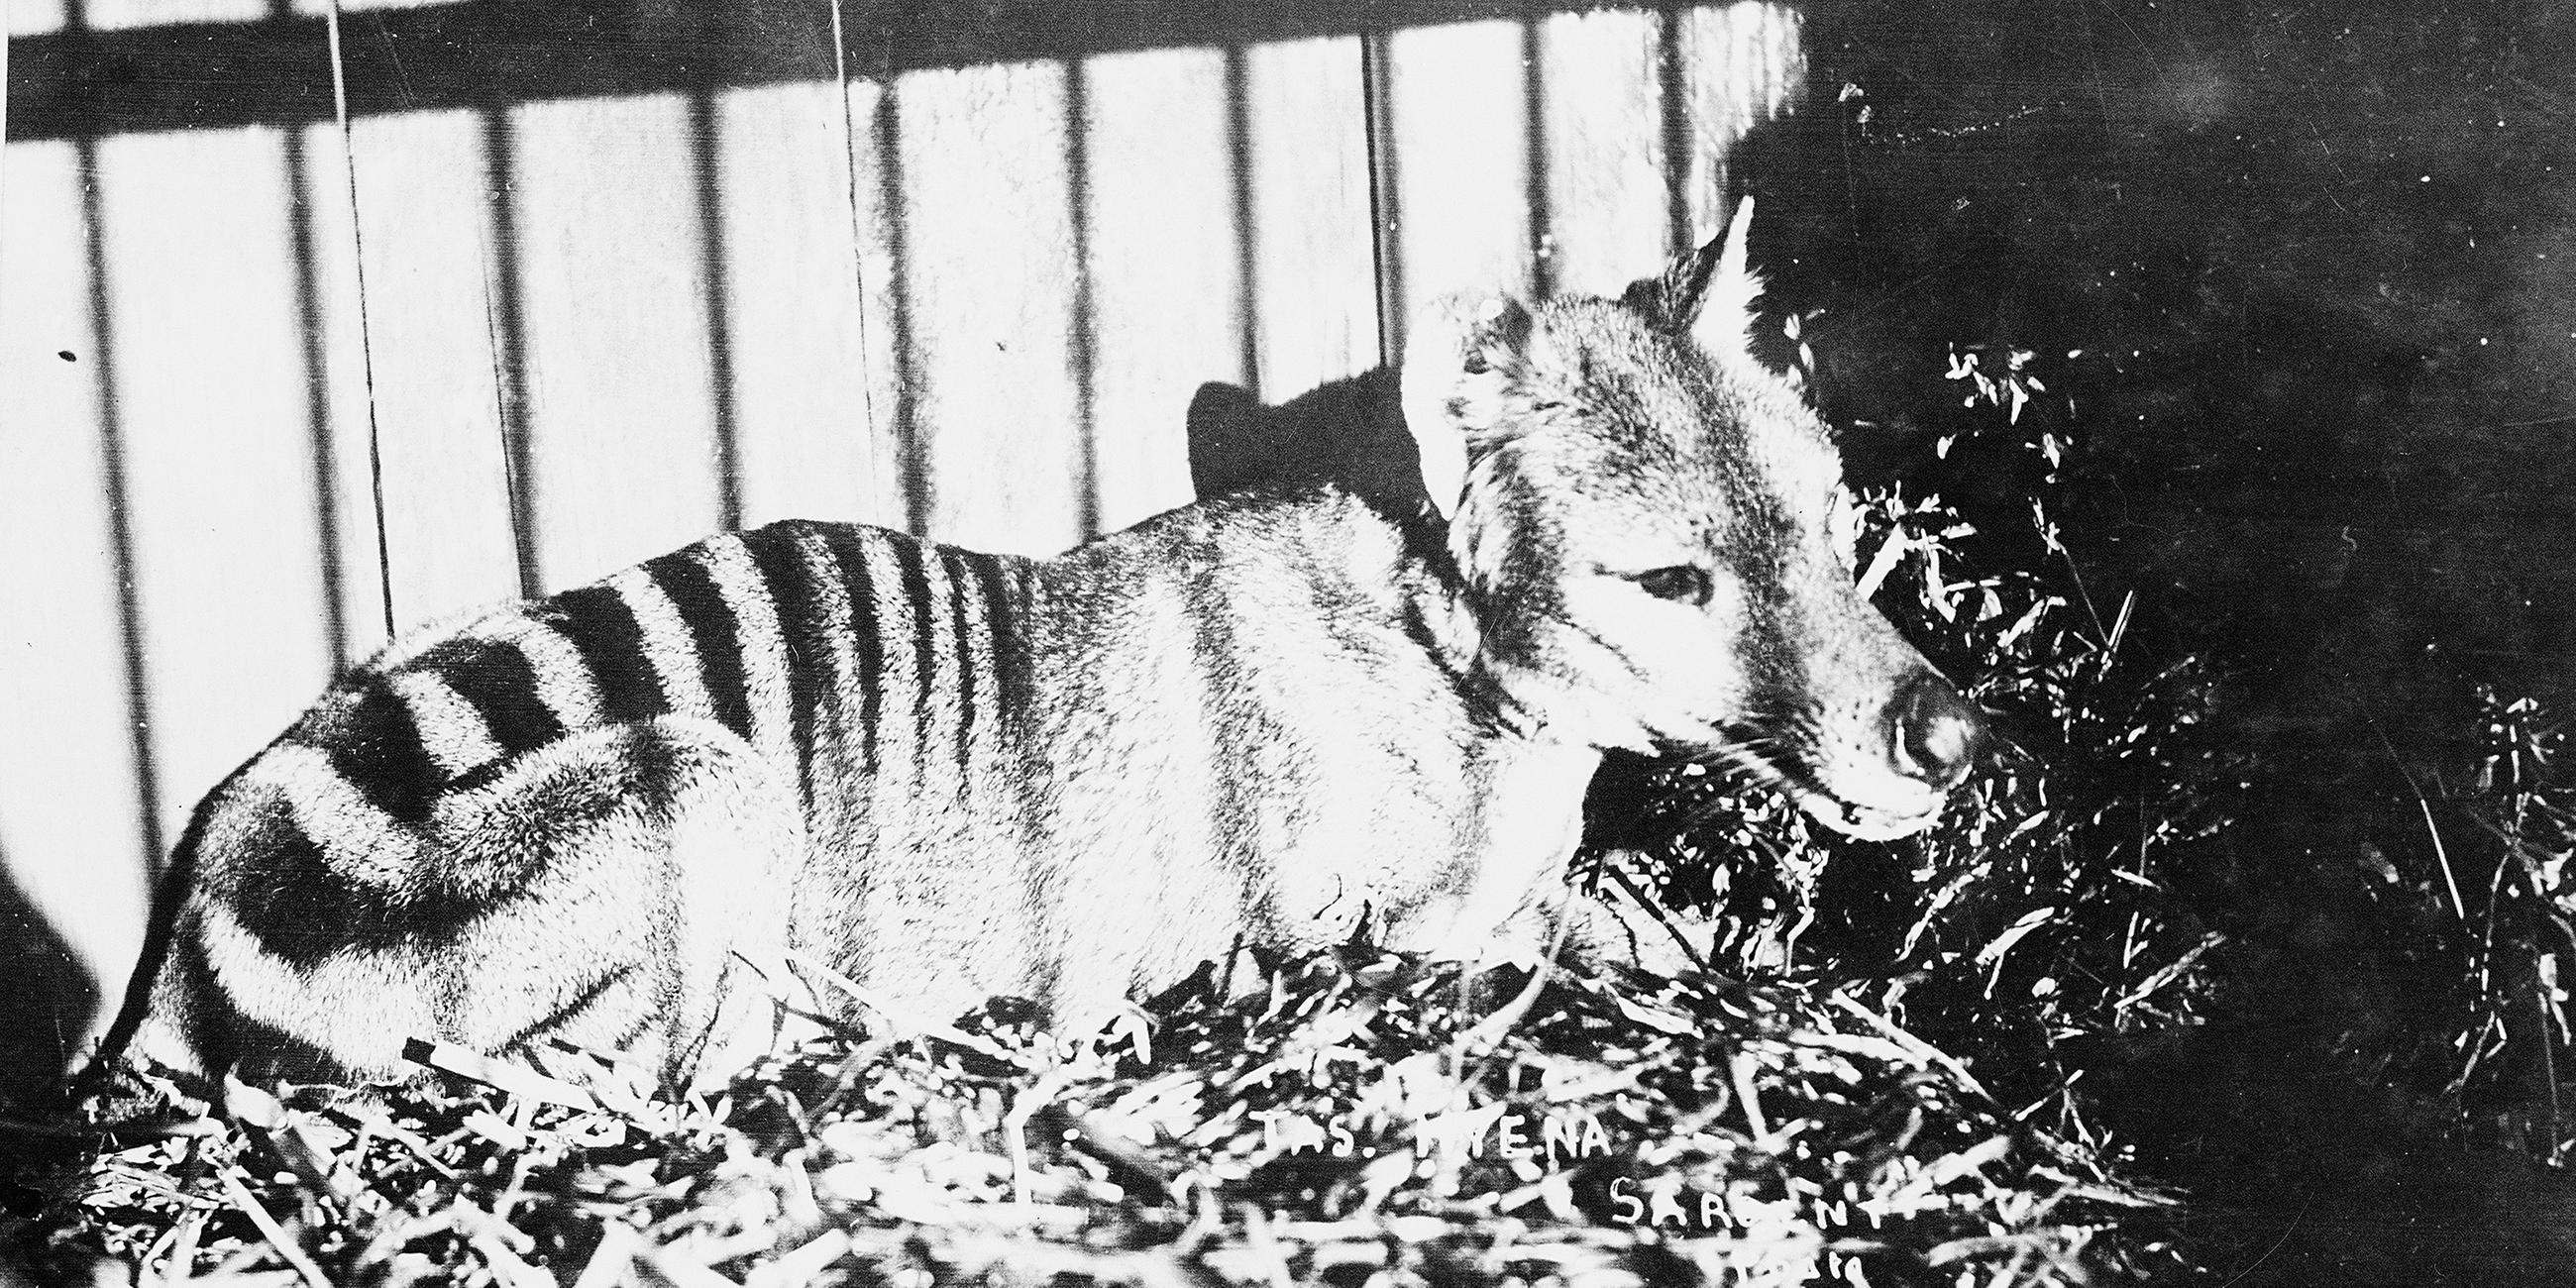 Archivfoto eines Tasmanischen Tigers in Gefangenschaft von 1930